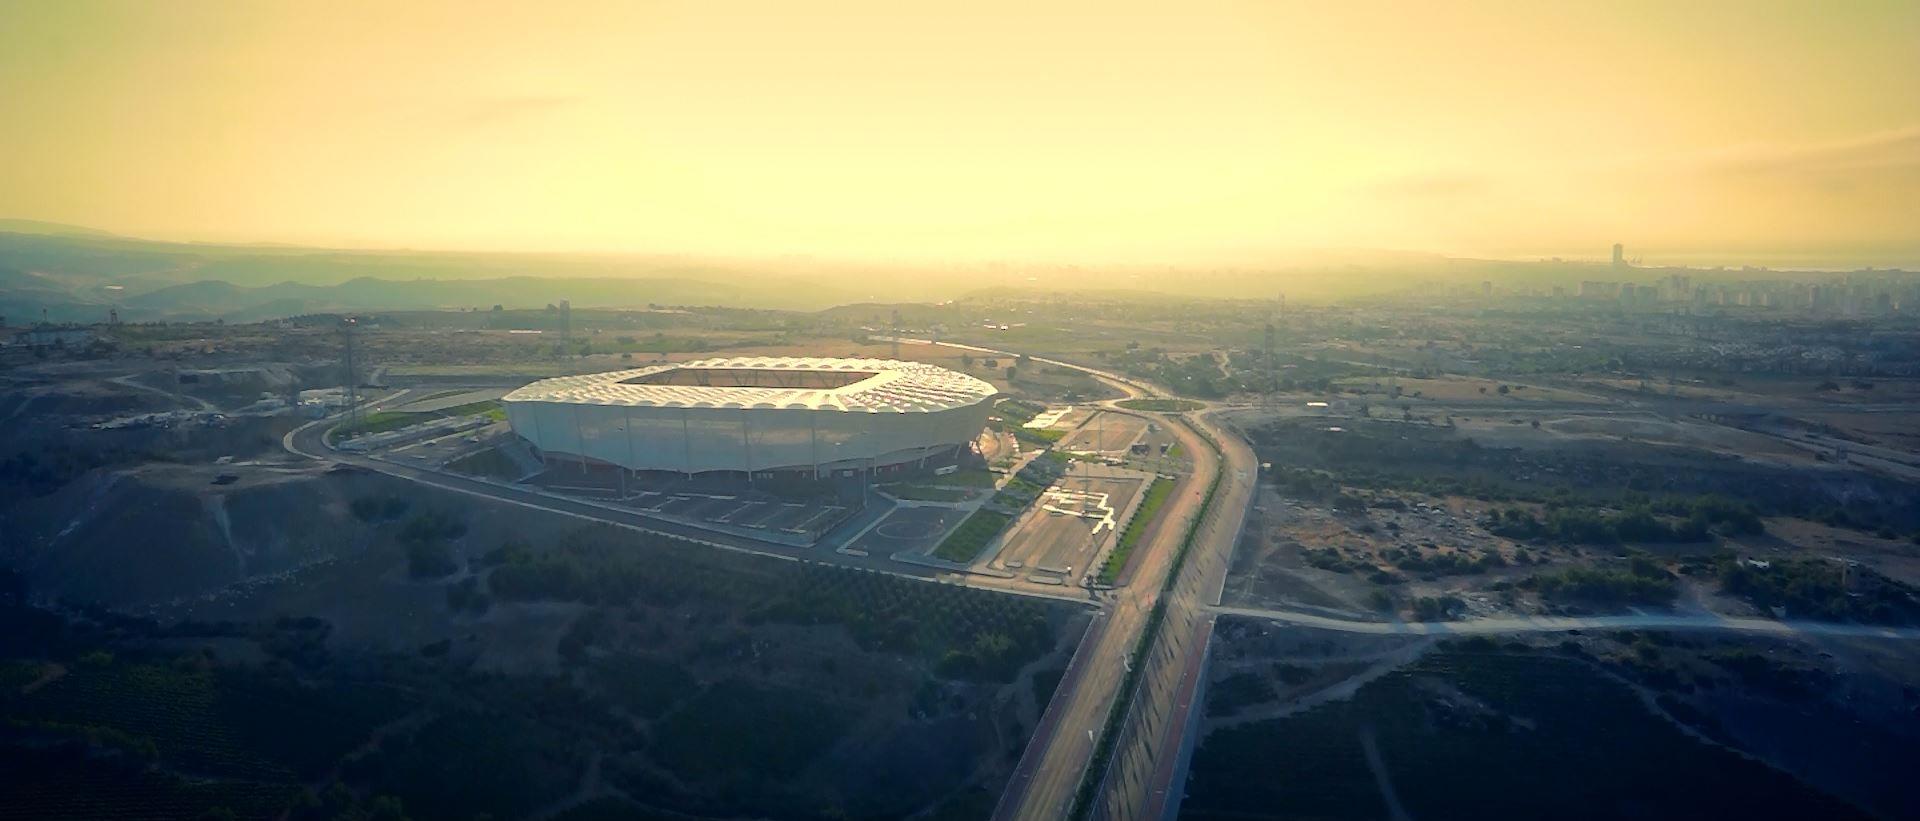 Mersin Olimpiyat Stadı otoyol bağlantı yolları